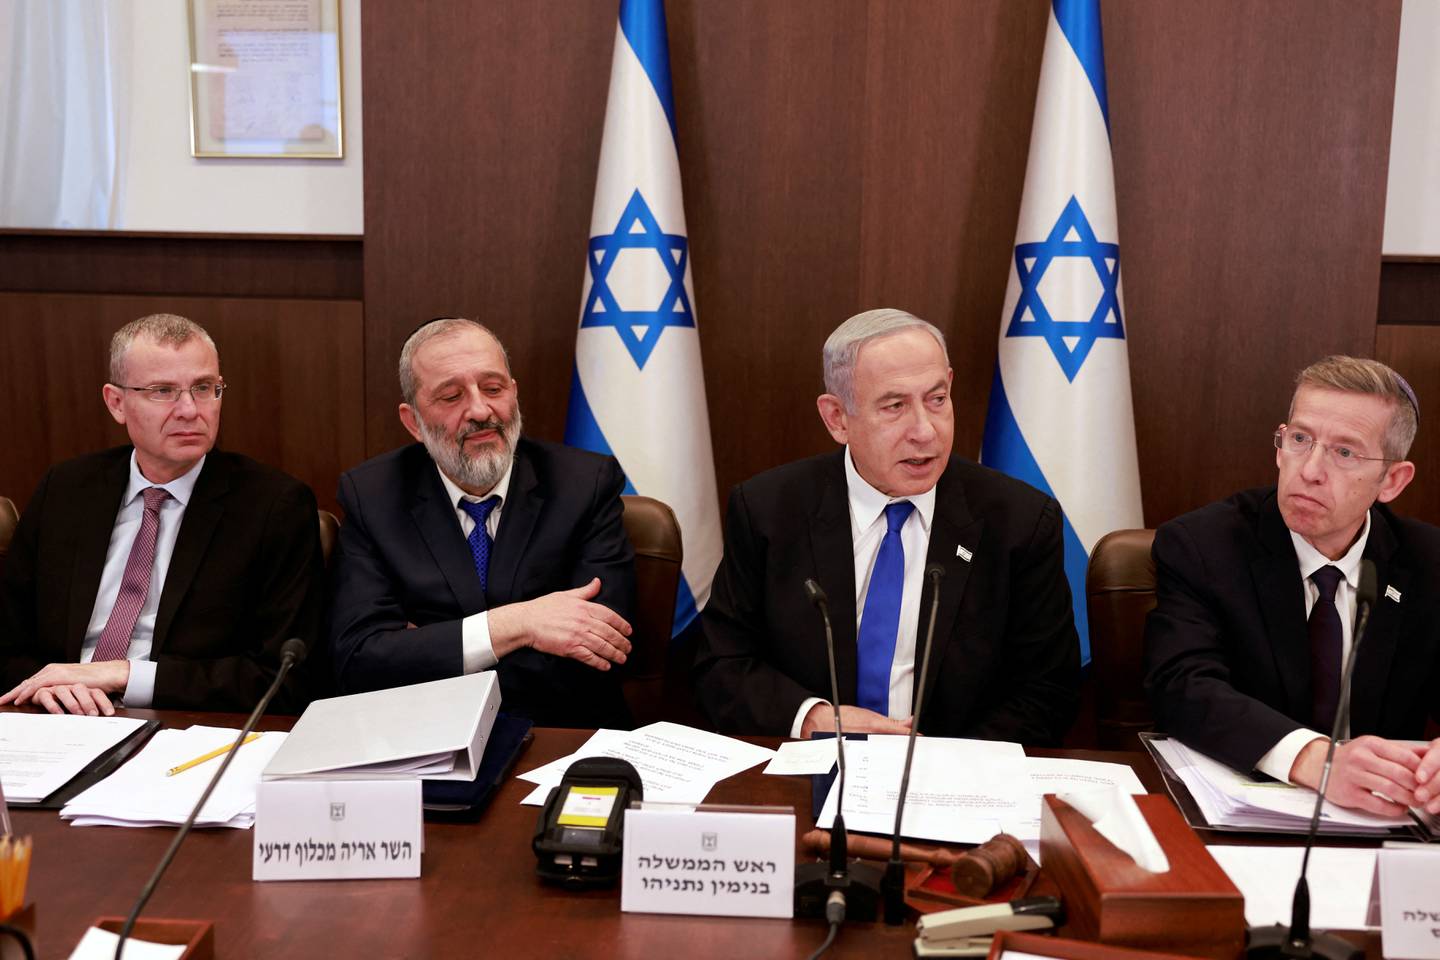 Justisminister Yariv Levin (t.v.) har fått sin del av kritikken for den planlagte rettsreformen. Her fra et møte i regjeringen søndag. Statsminister Benjamin Netanyahu (nr. 2 f.h.) er også på plass.